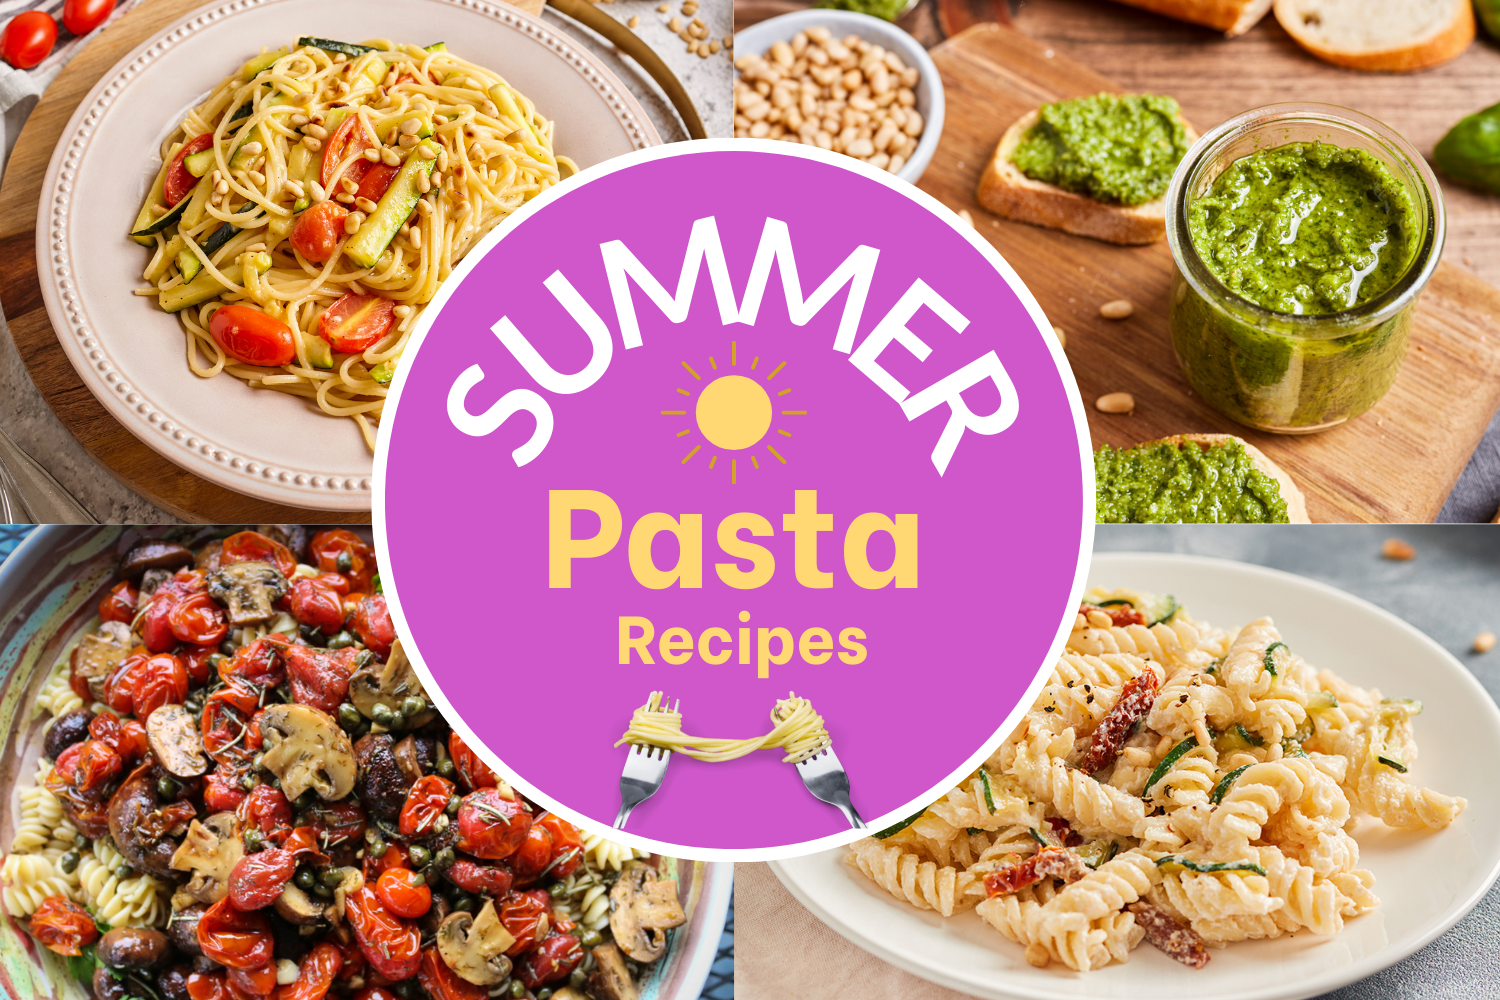 Summer Pasta Recipes